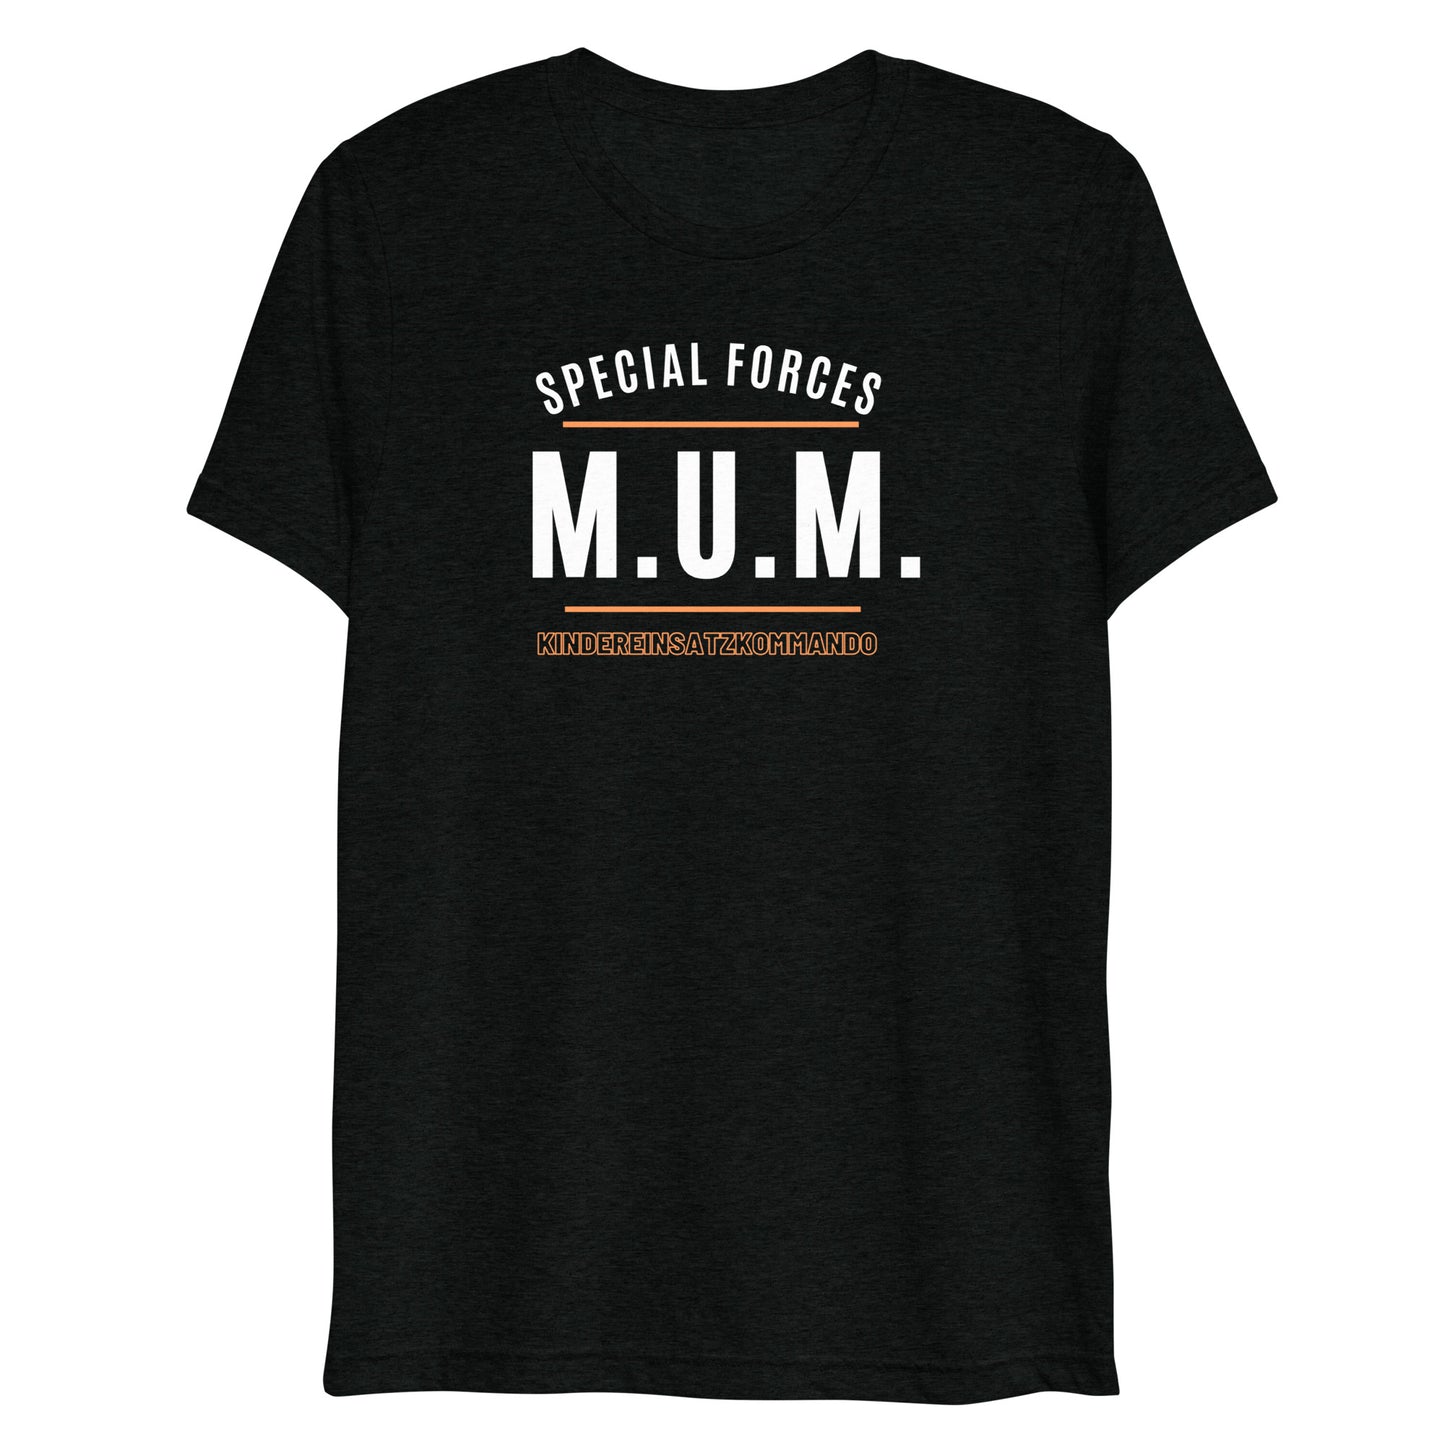 M.U.M. - Statement auf klassischem T-Shirt :-)